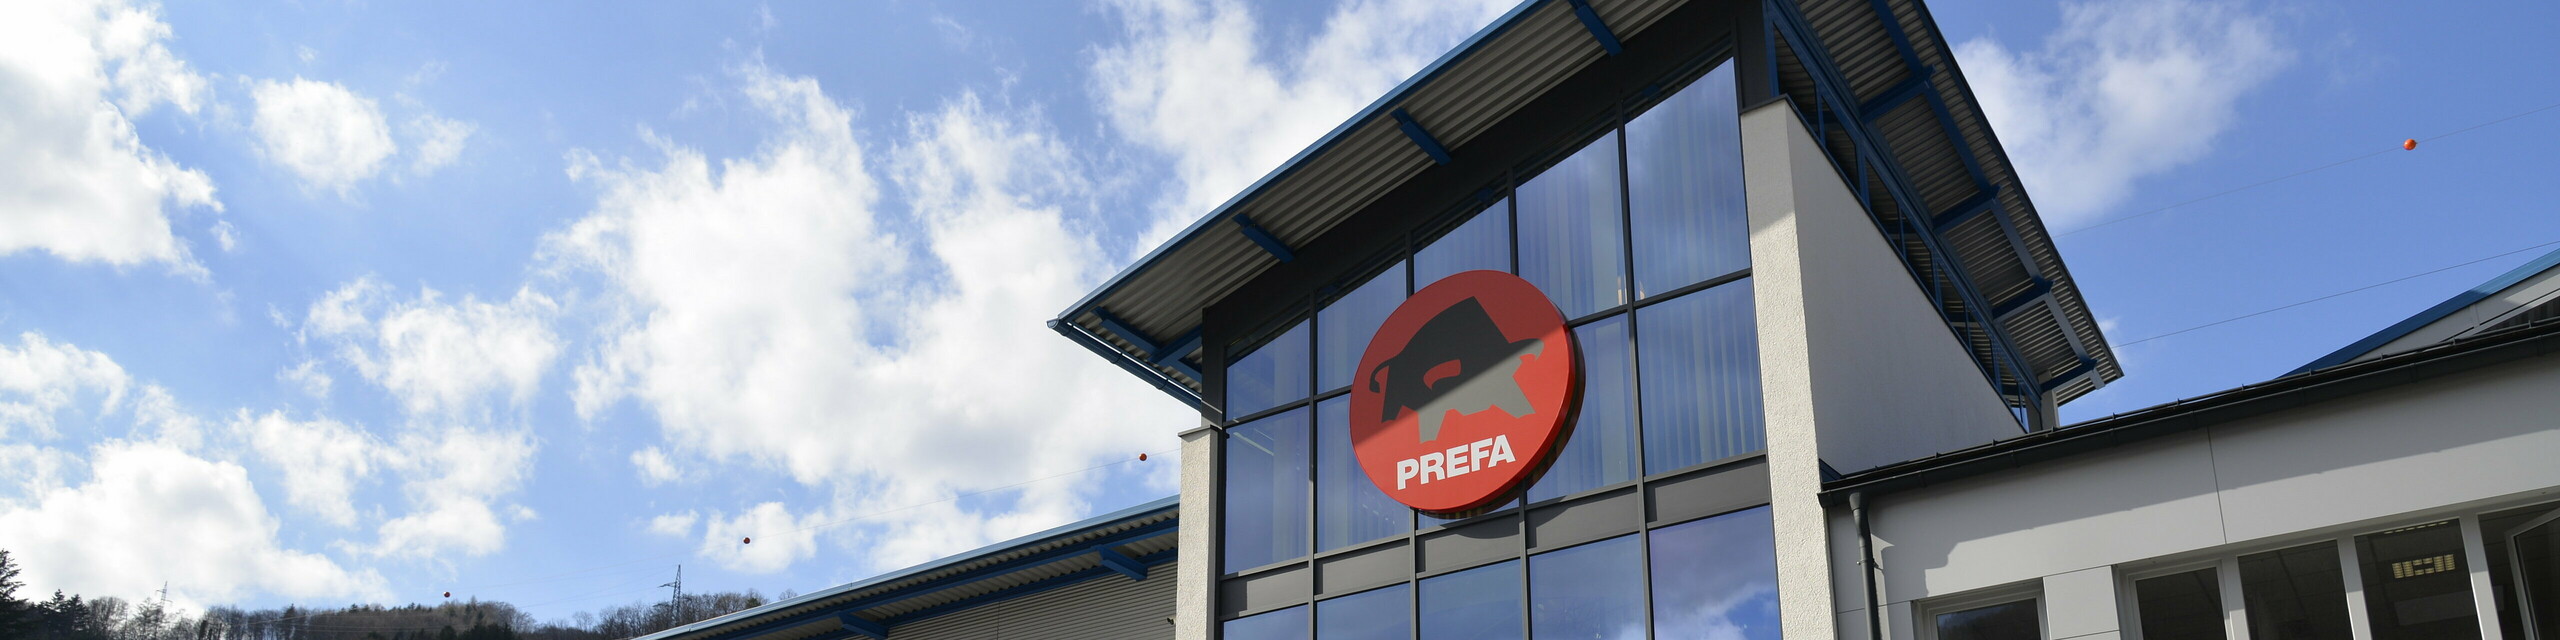 Aufnahme der PREFA Niederlassung in Österreich, Marktl bei Lilienfeld, Headquarter der PREFA Aluminiumprodukte